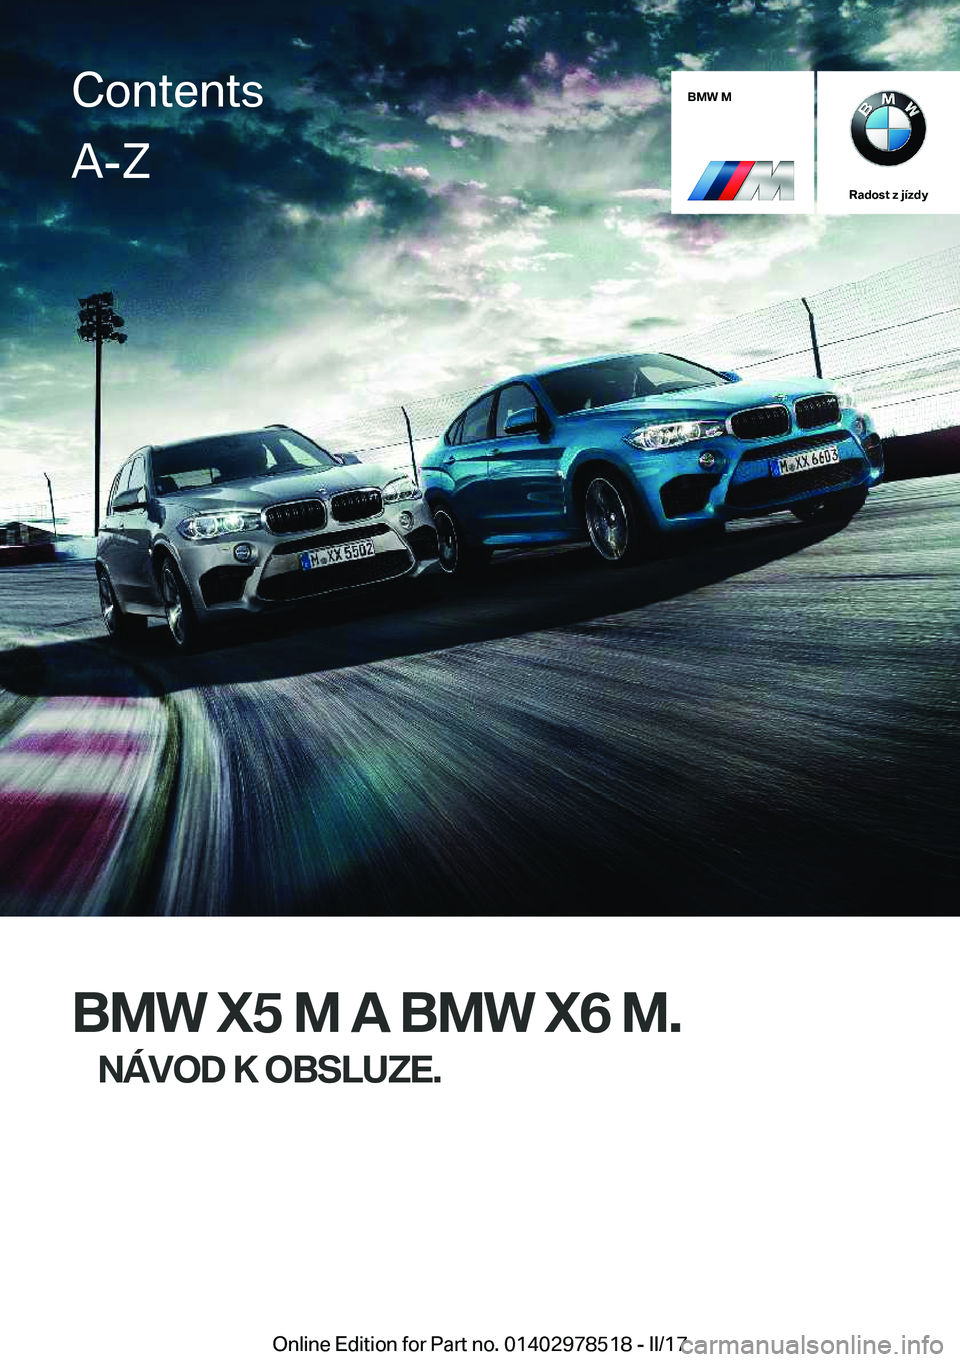 BMW X6 M 2017  Návod na použití (in Czech) �B�M�W��M
�R�a�d�o�s�t��z��j�